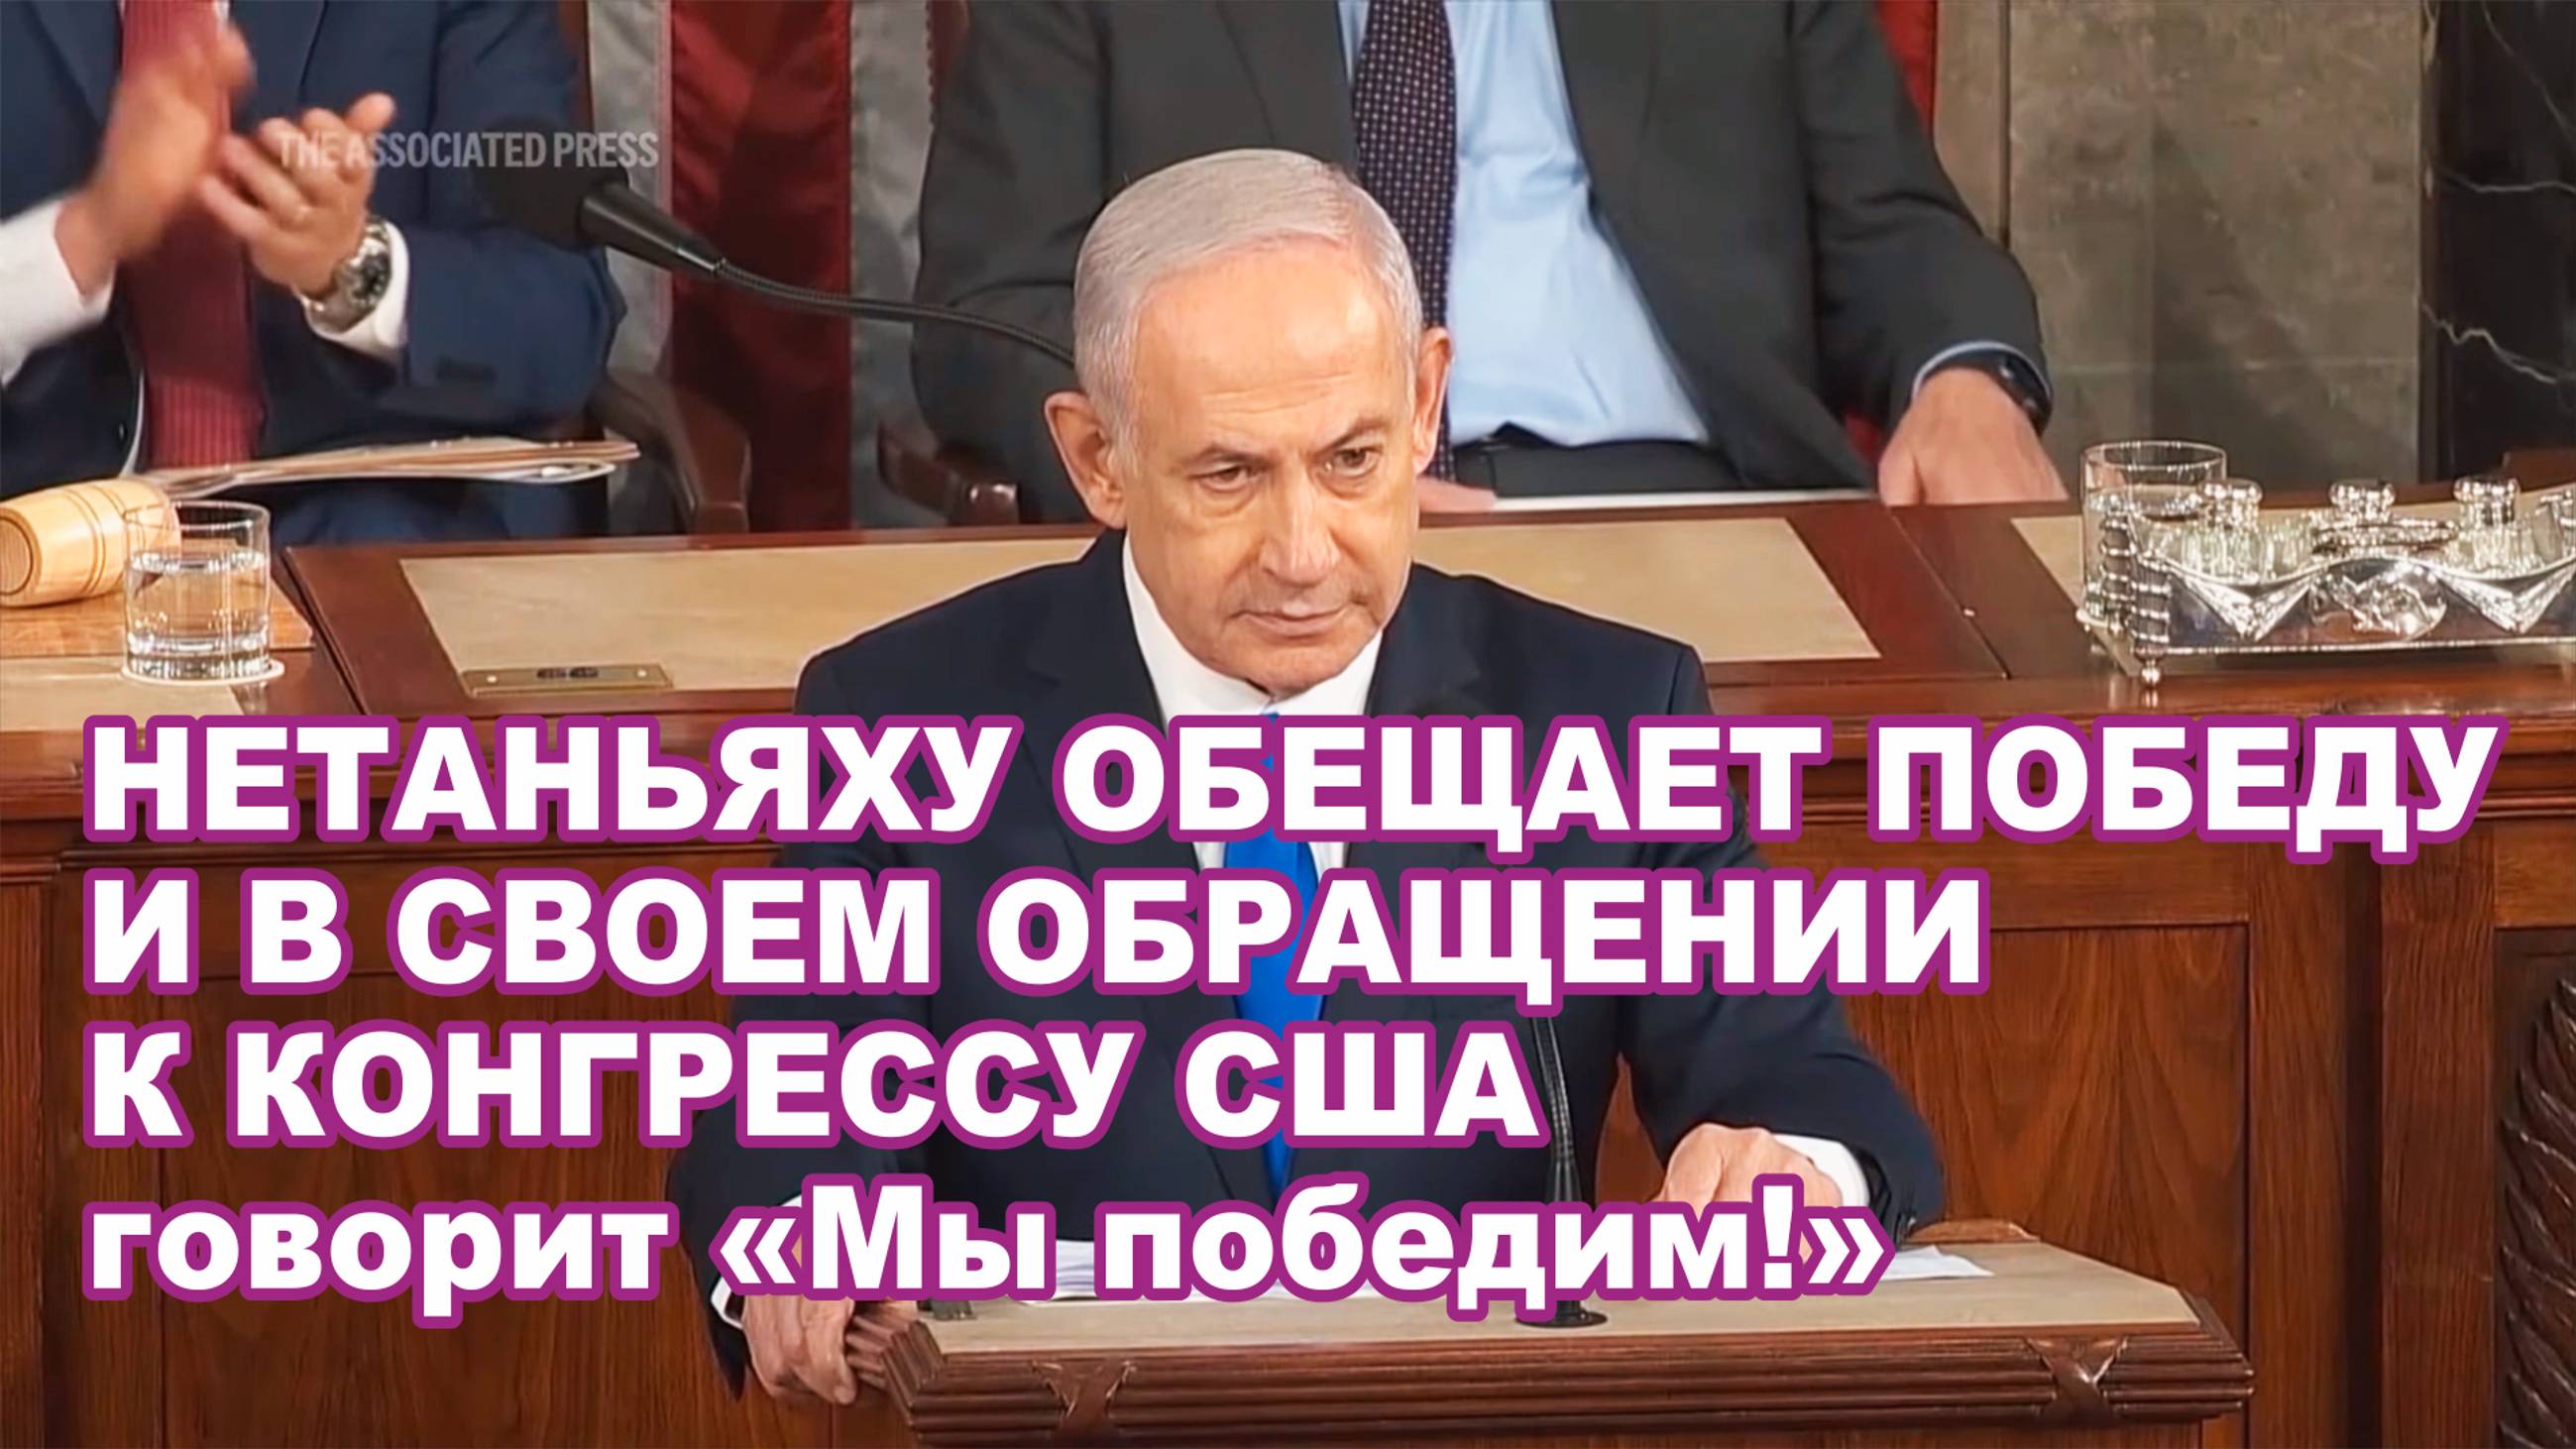 Нетаньяху обещает победу и в своем обращении к Конгрессу говорит «Мы победим!».